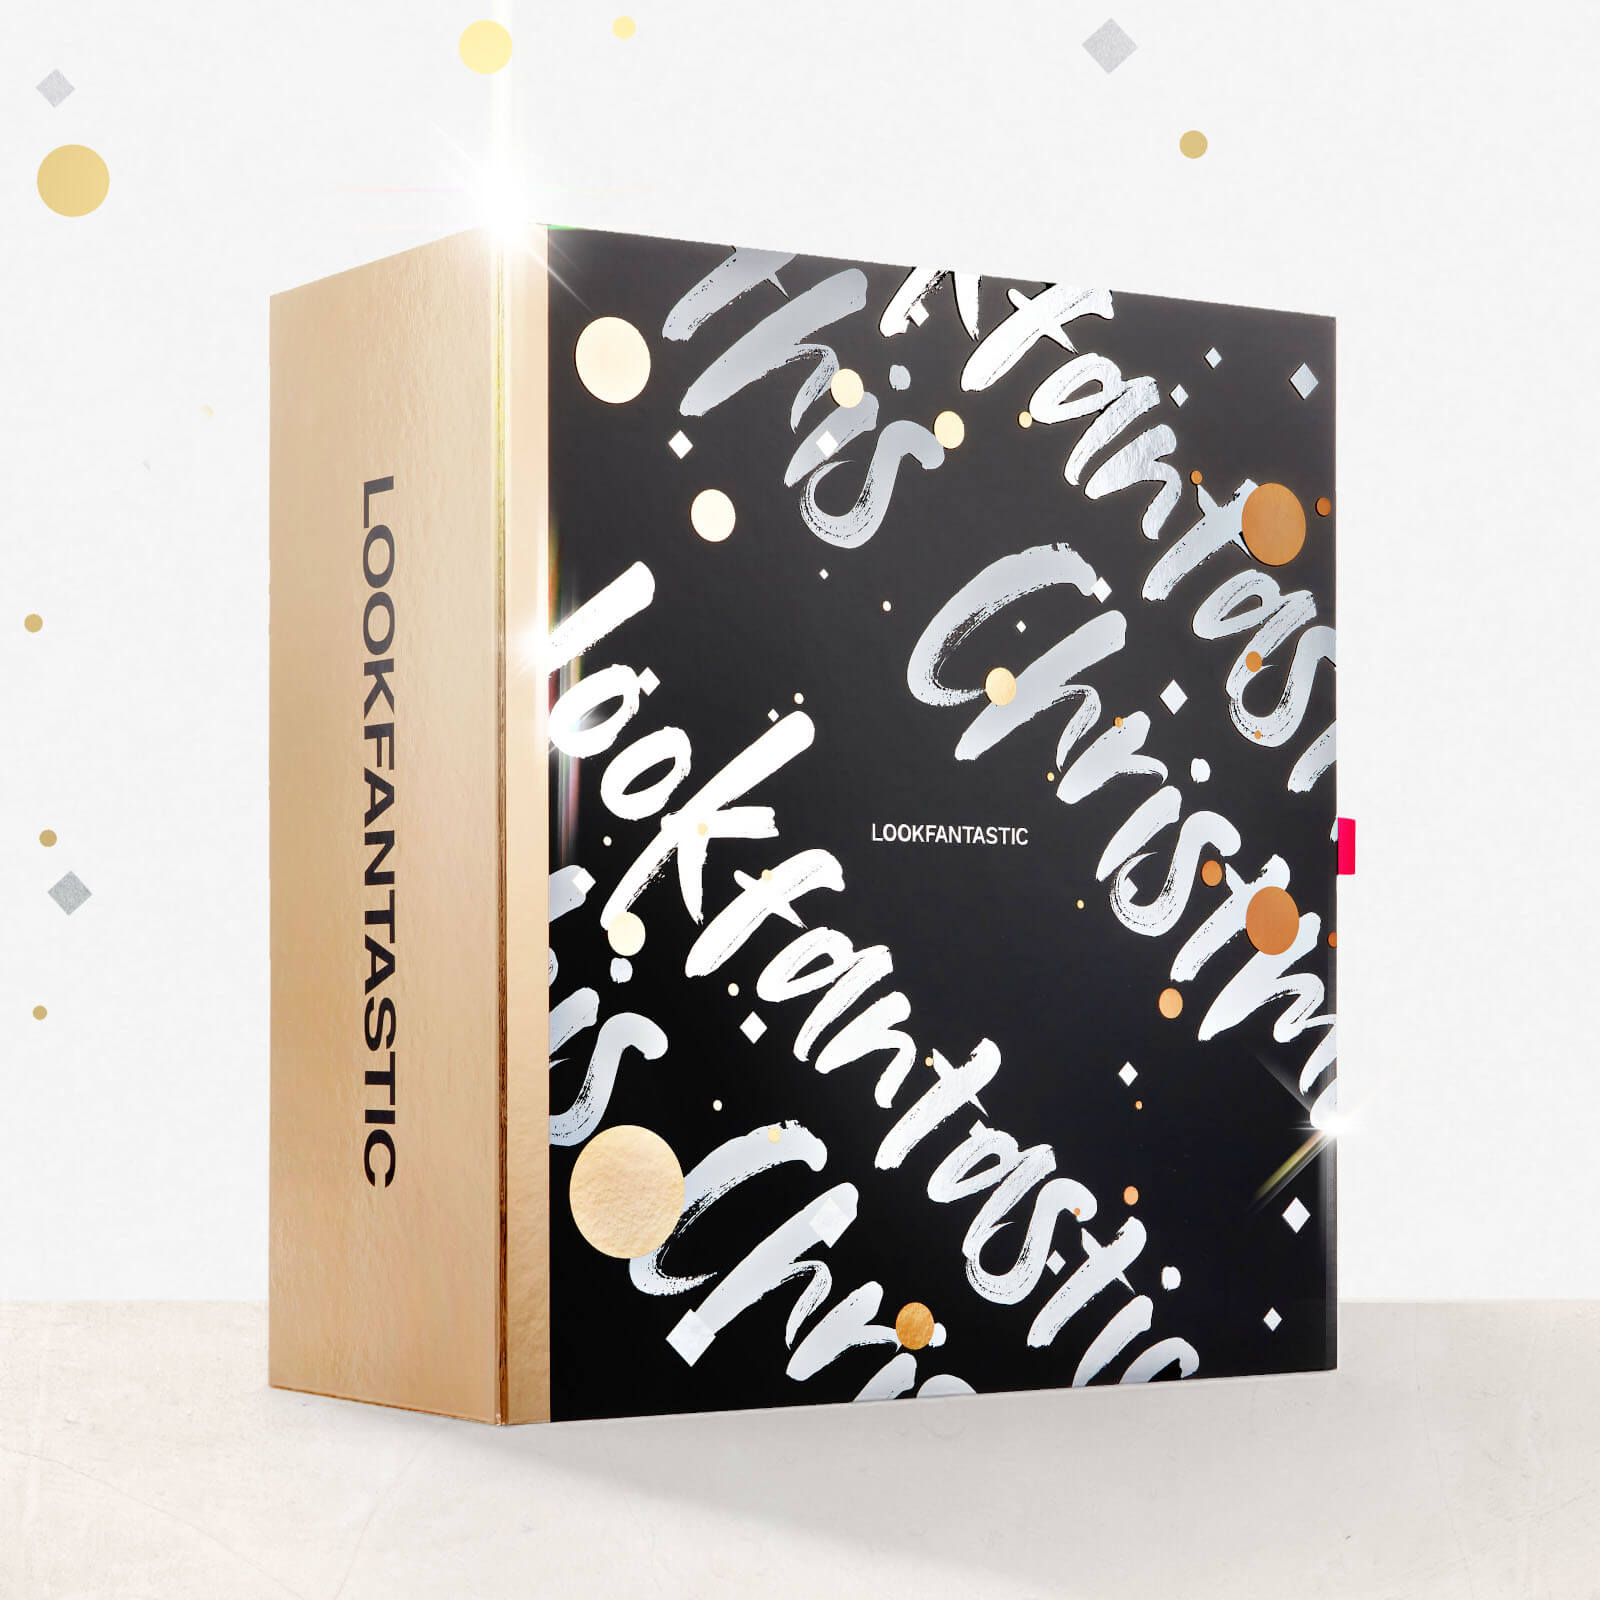 【2020聖誕節】Lookfantastic 2020聖誕日曆&各品牌聖誕日曆禮盒(陸續整理)